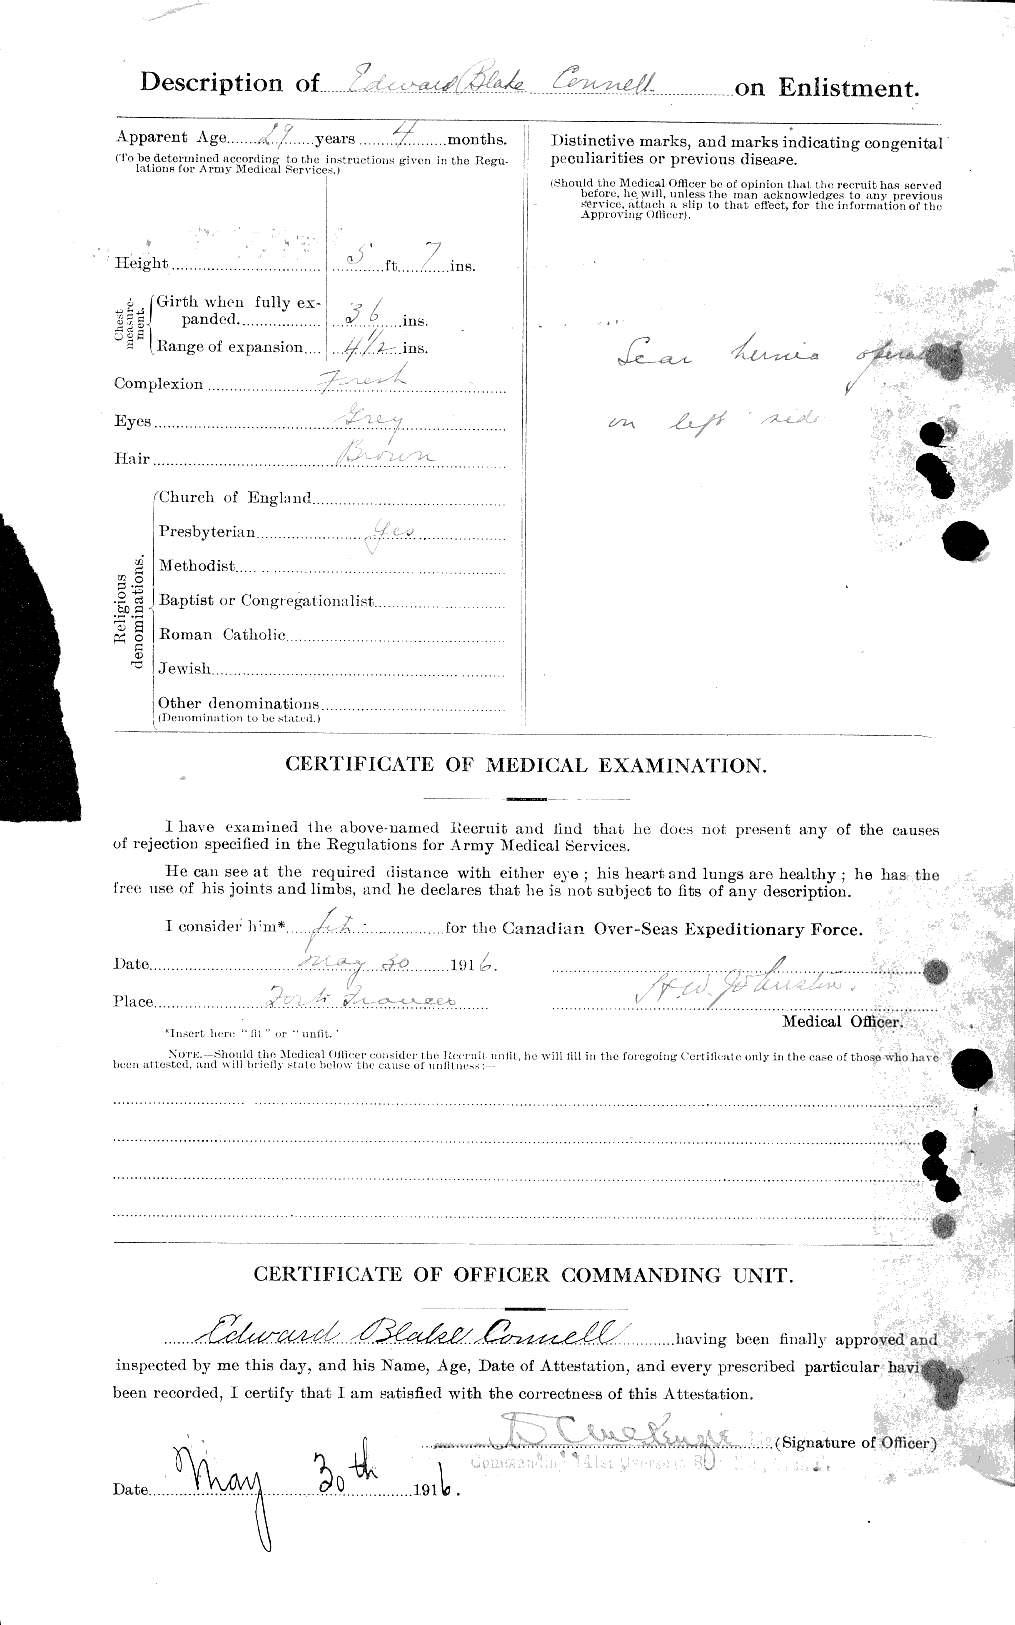 Dossiers du Personnel de la Première Guerre mondiale - CEC 038143b